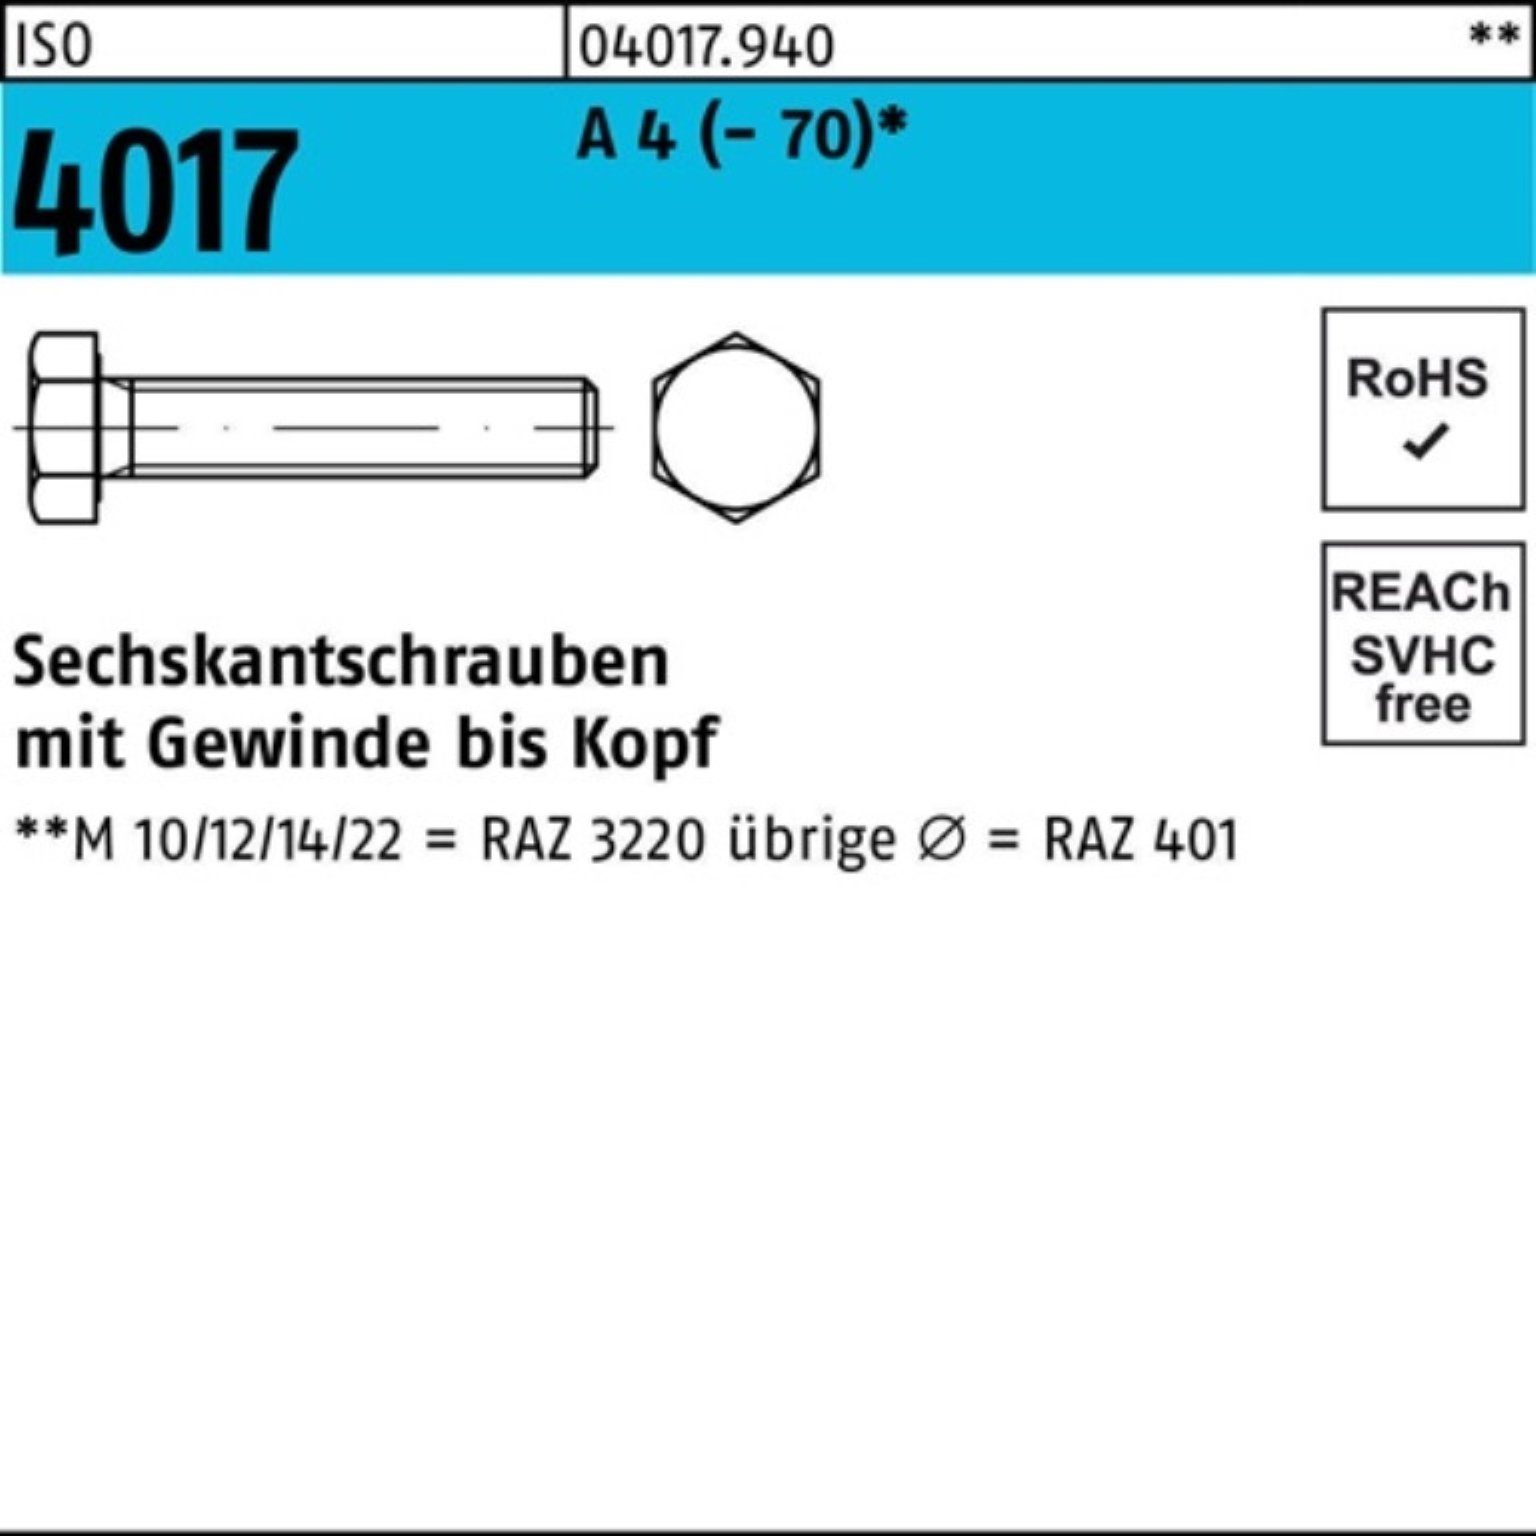 Bufab Sechskantschraube 100er Pack Sechskantschraube ISO 4017 VG M27x 130 A 4 (70) 1 Stück